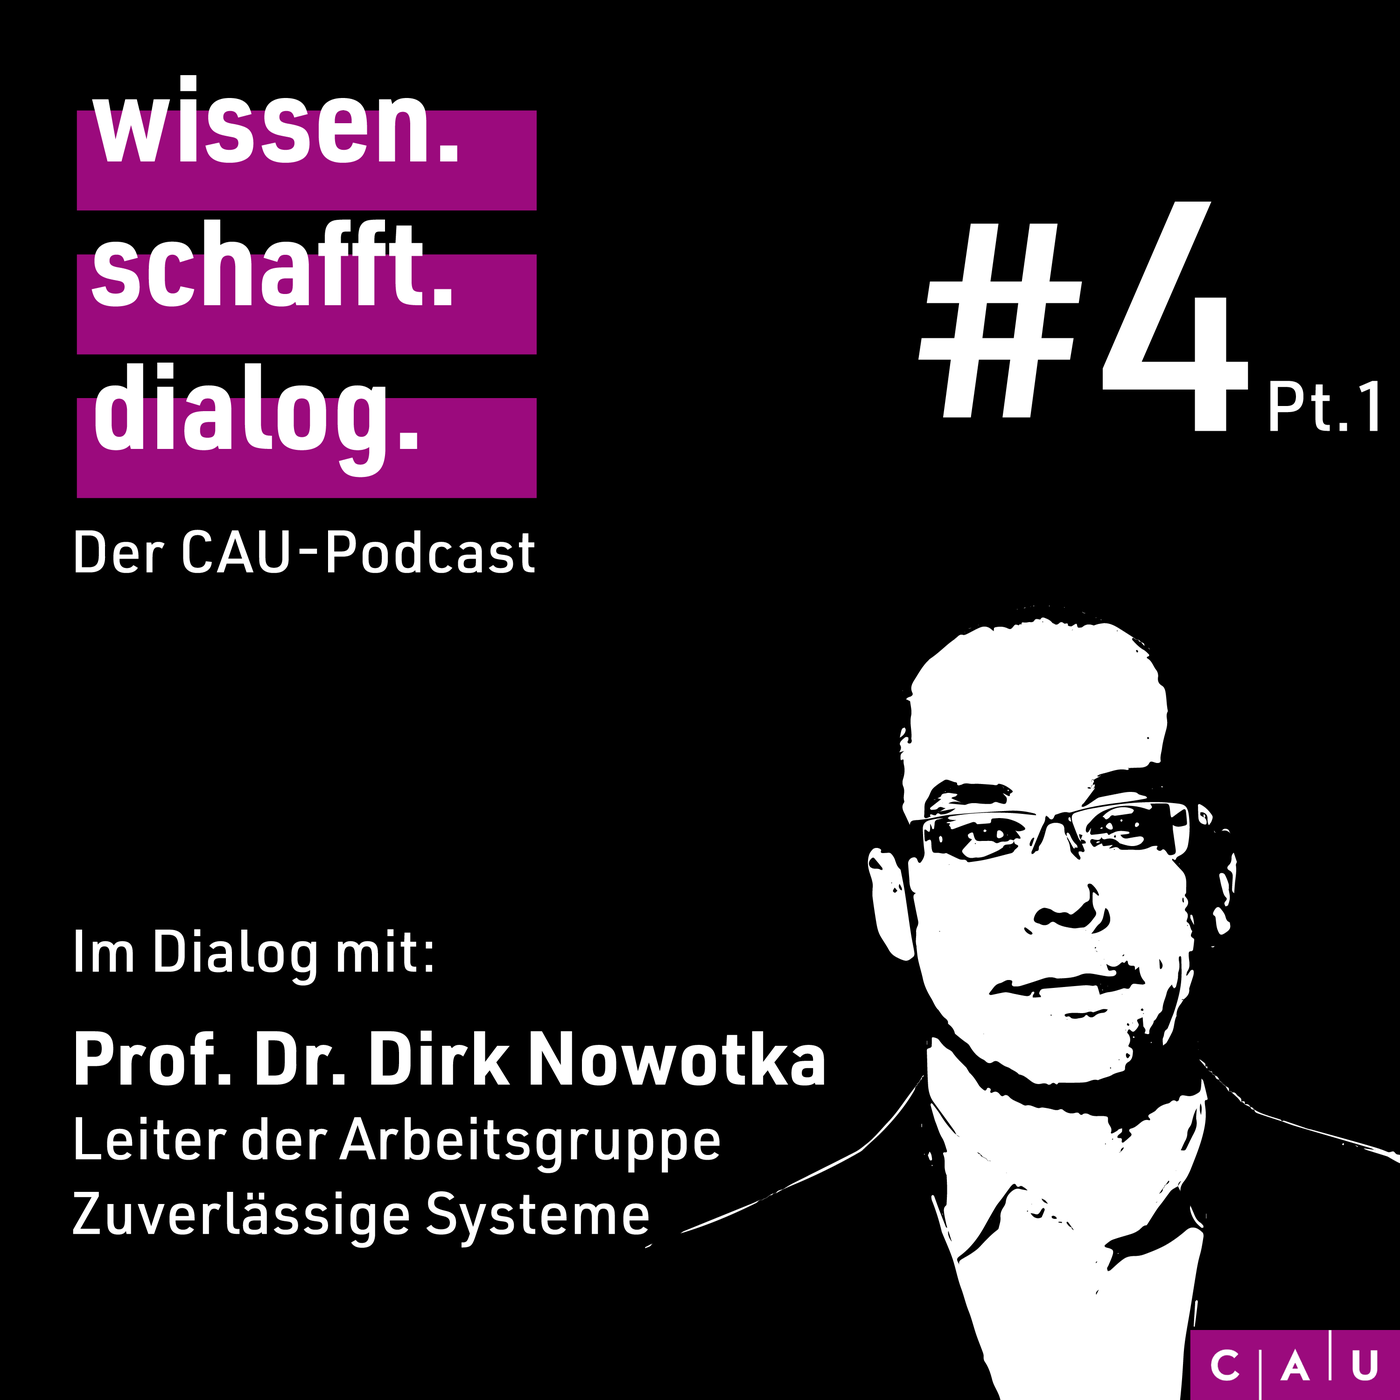 Im Dialog mit: Prof. Dr. Dirk Nowotka (Pt. 1)